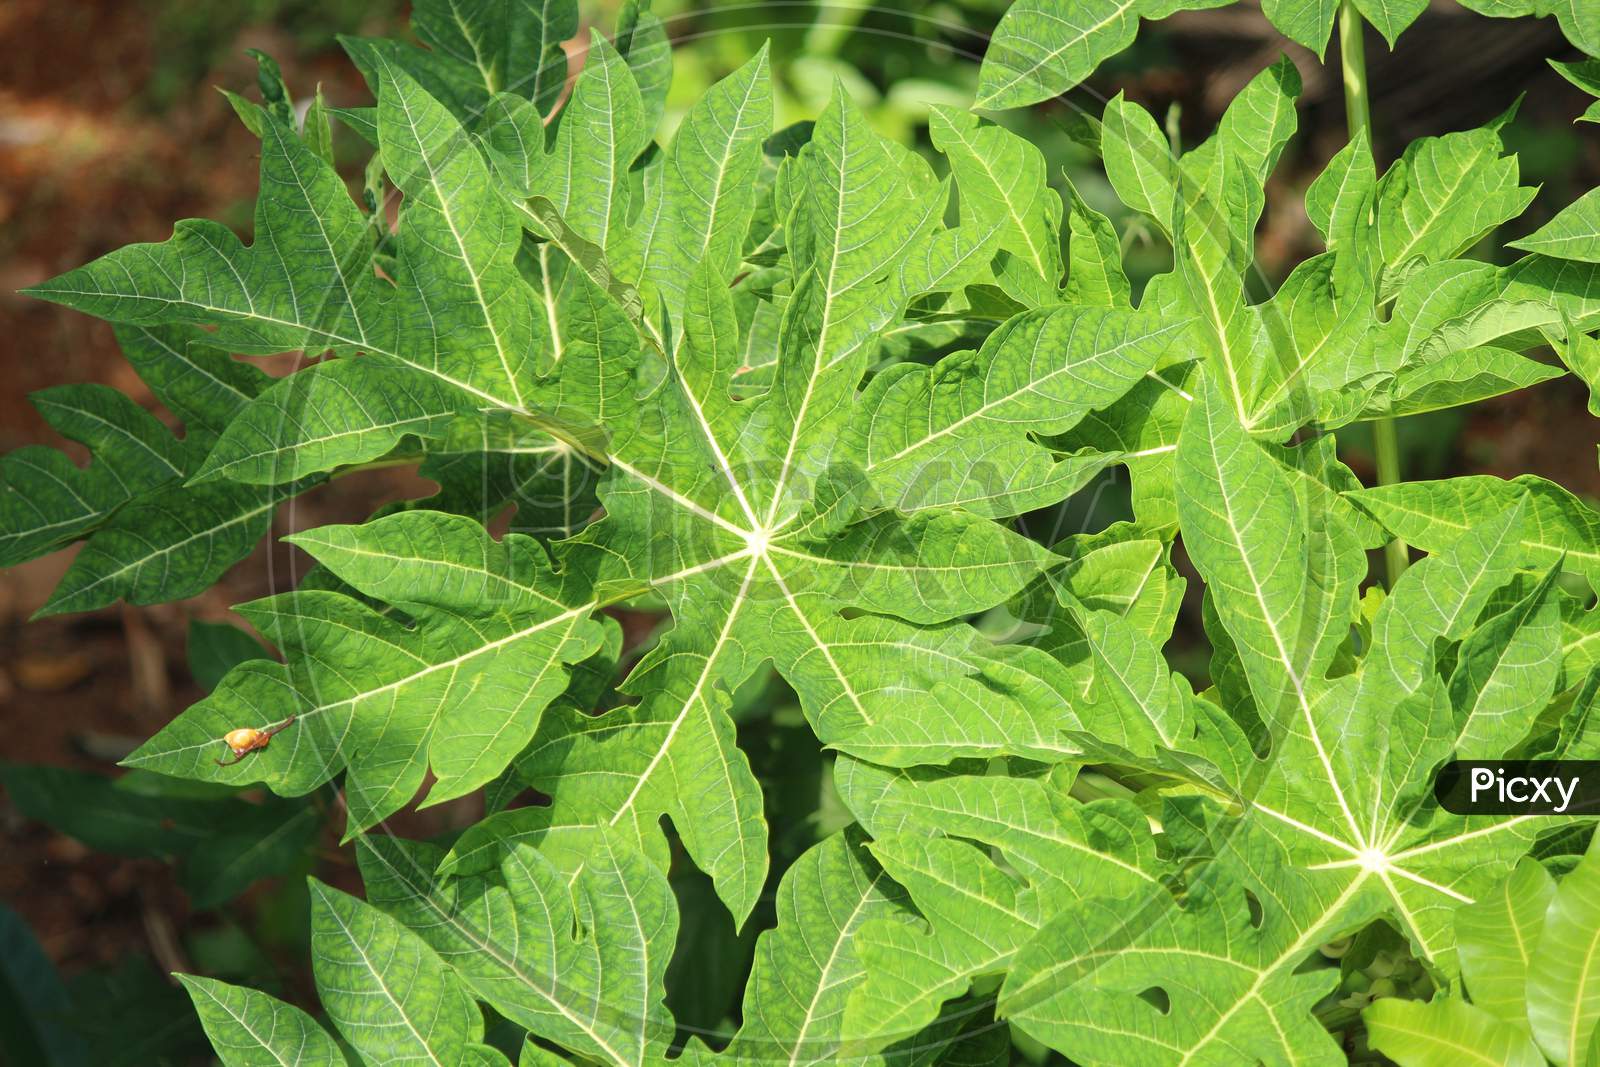 papaya leaf from the papaya plant